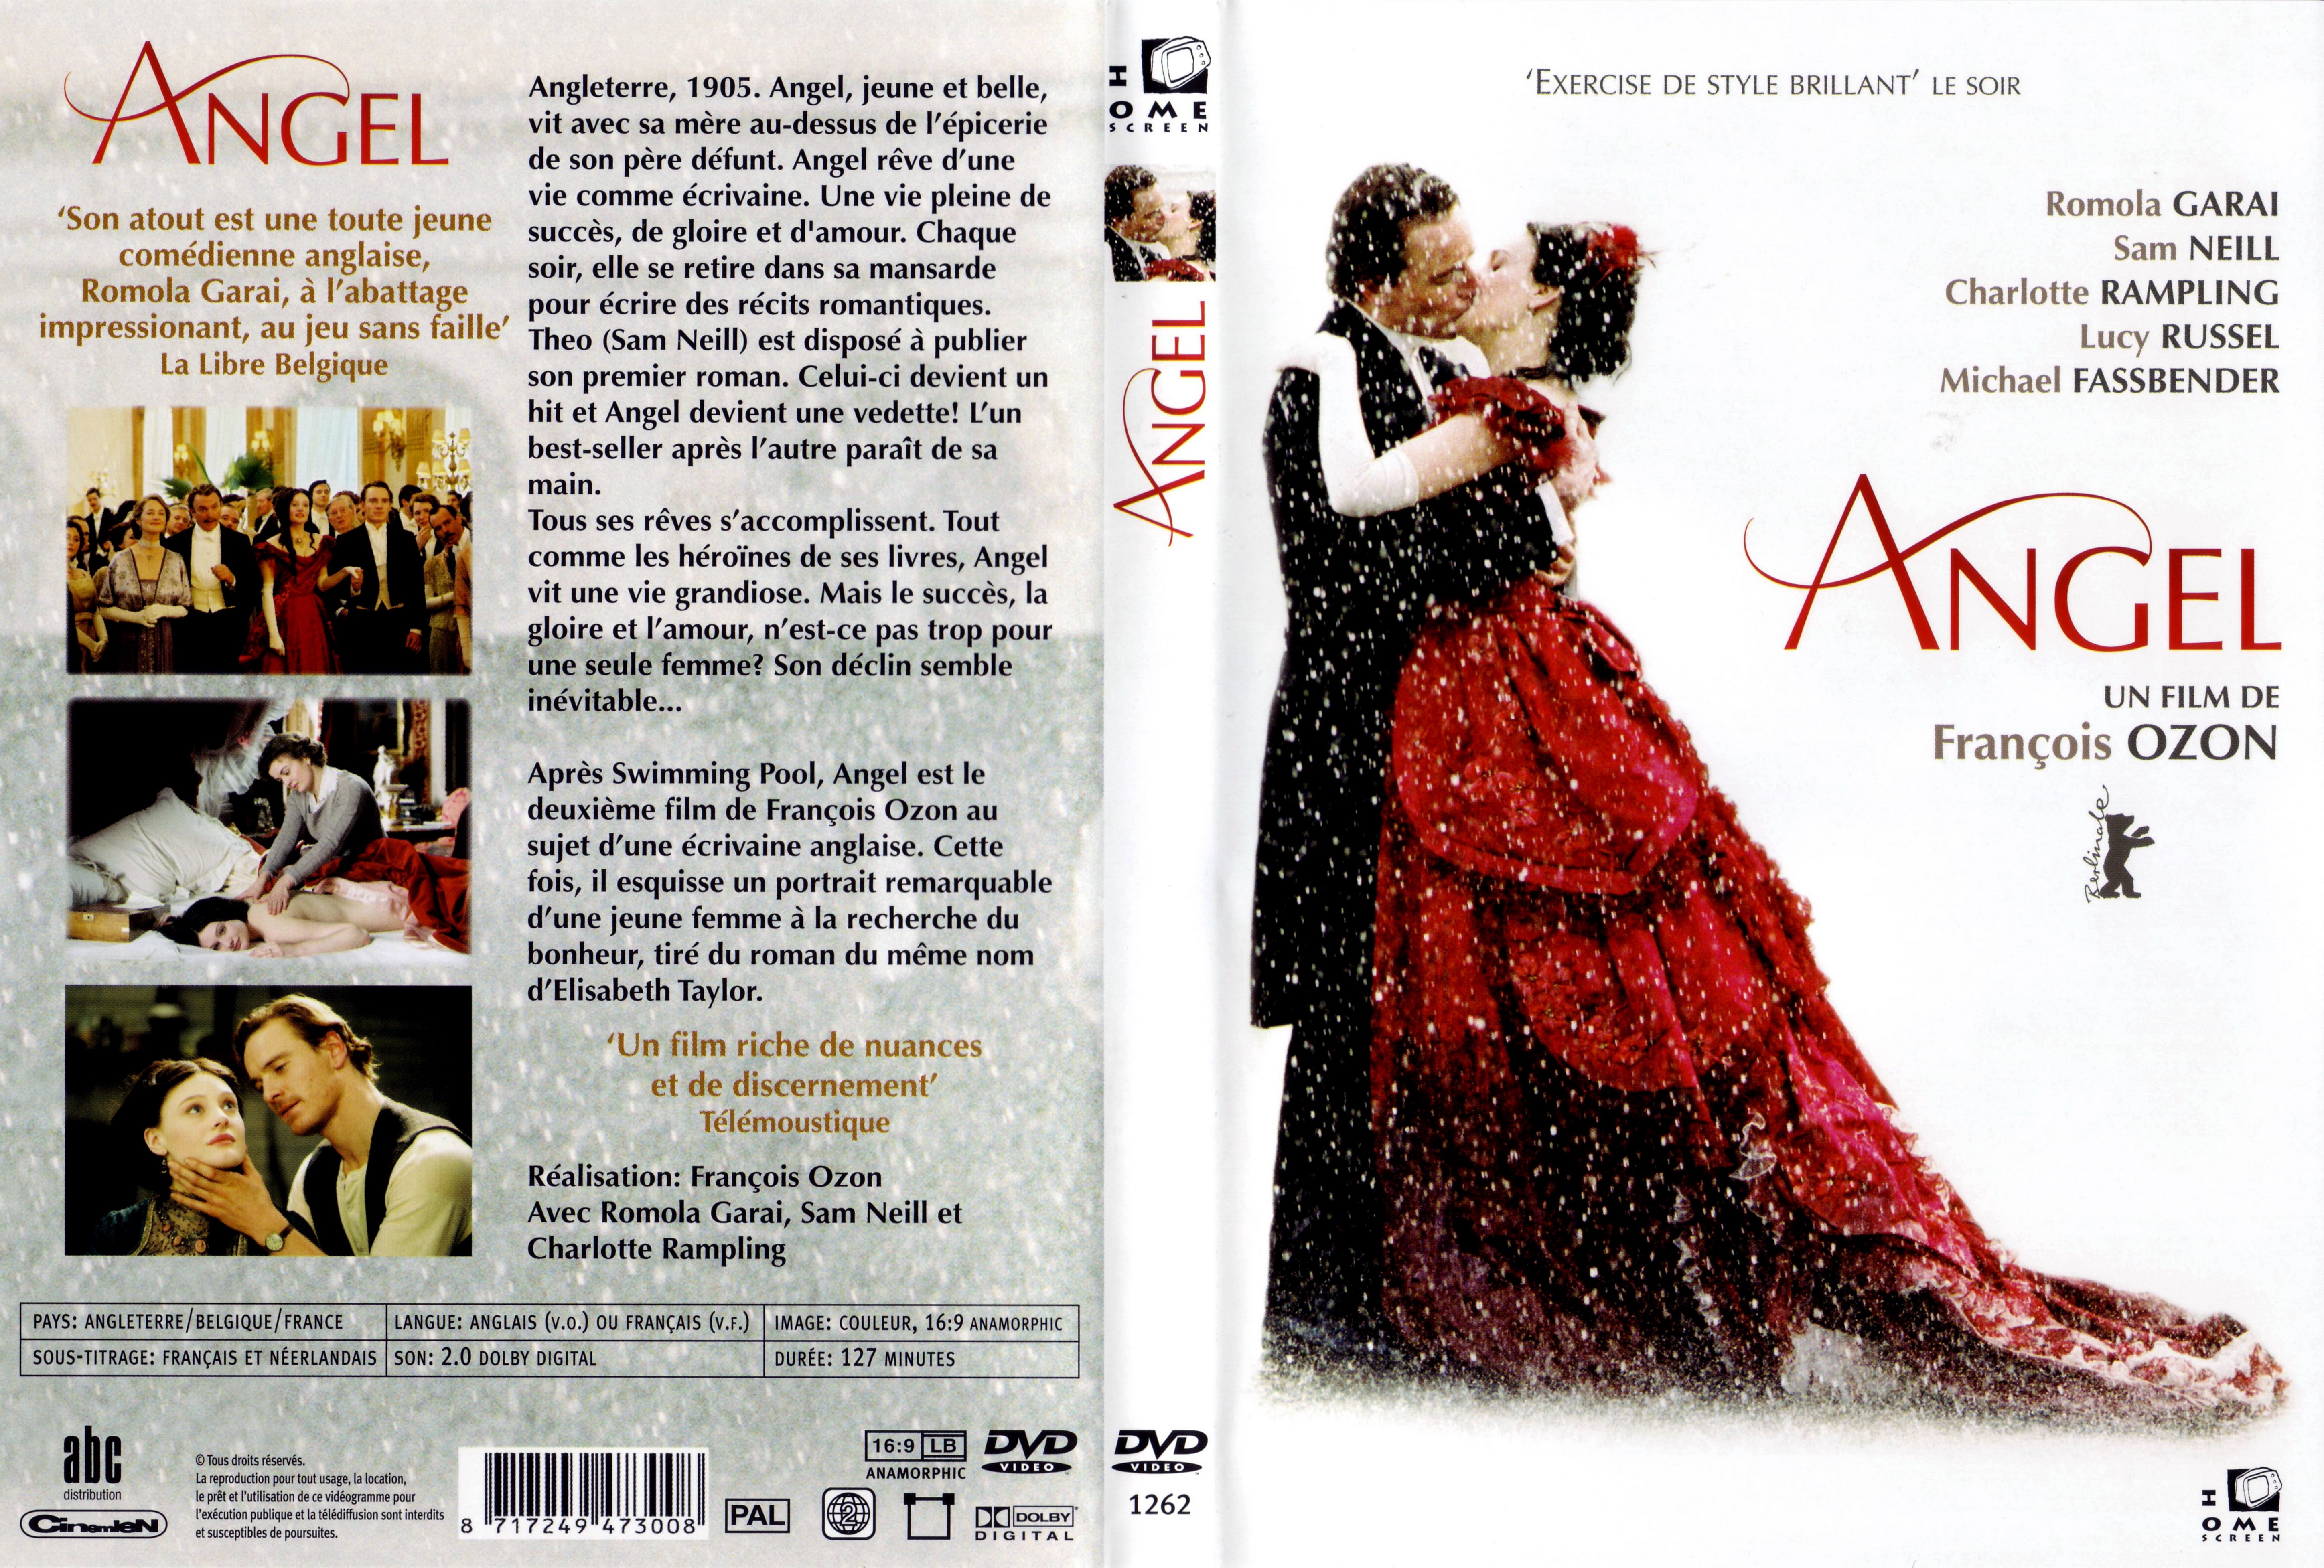 Jaquette DVD Angel (2007) v2